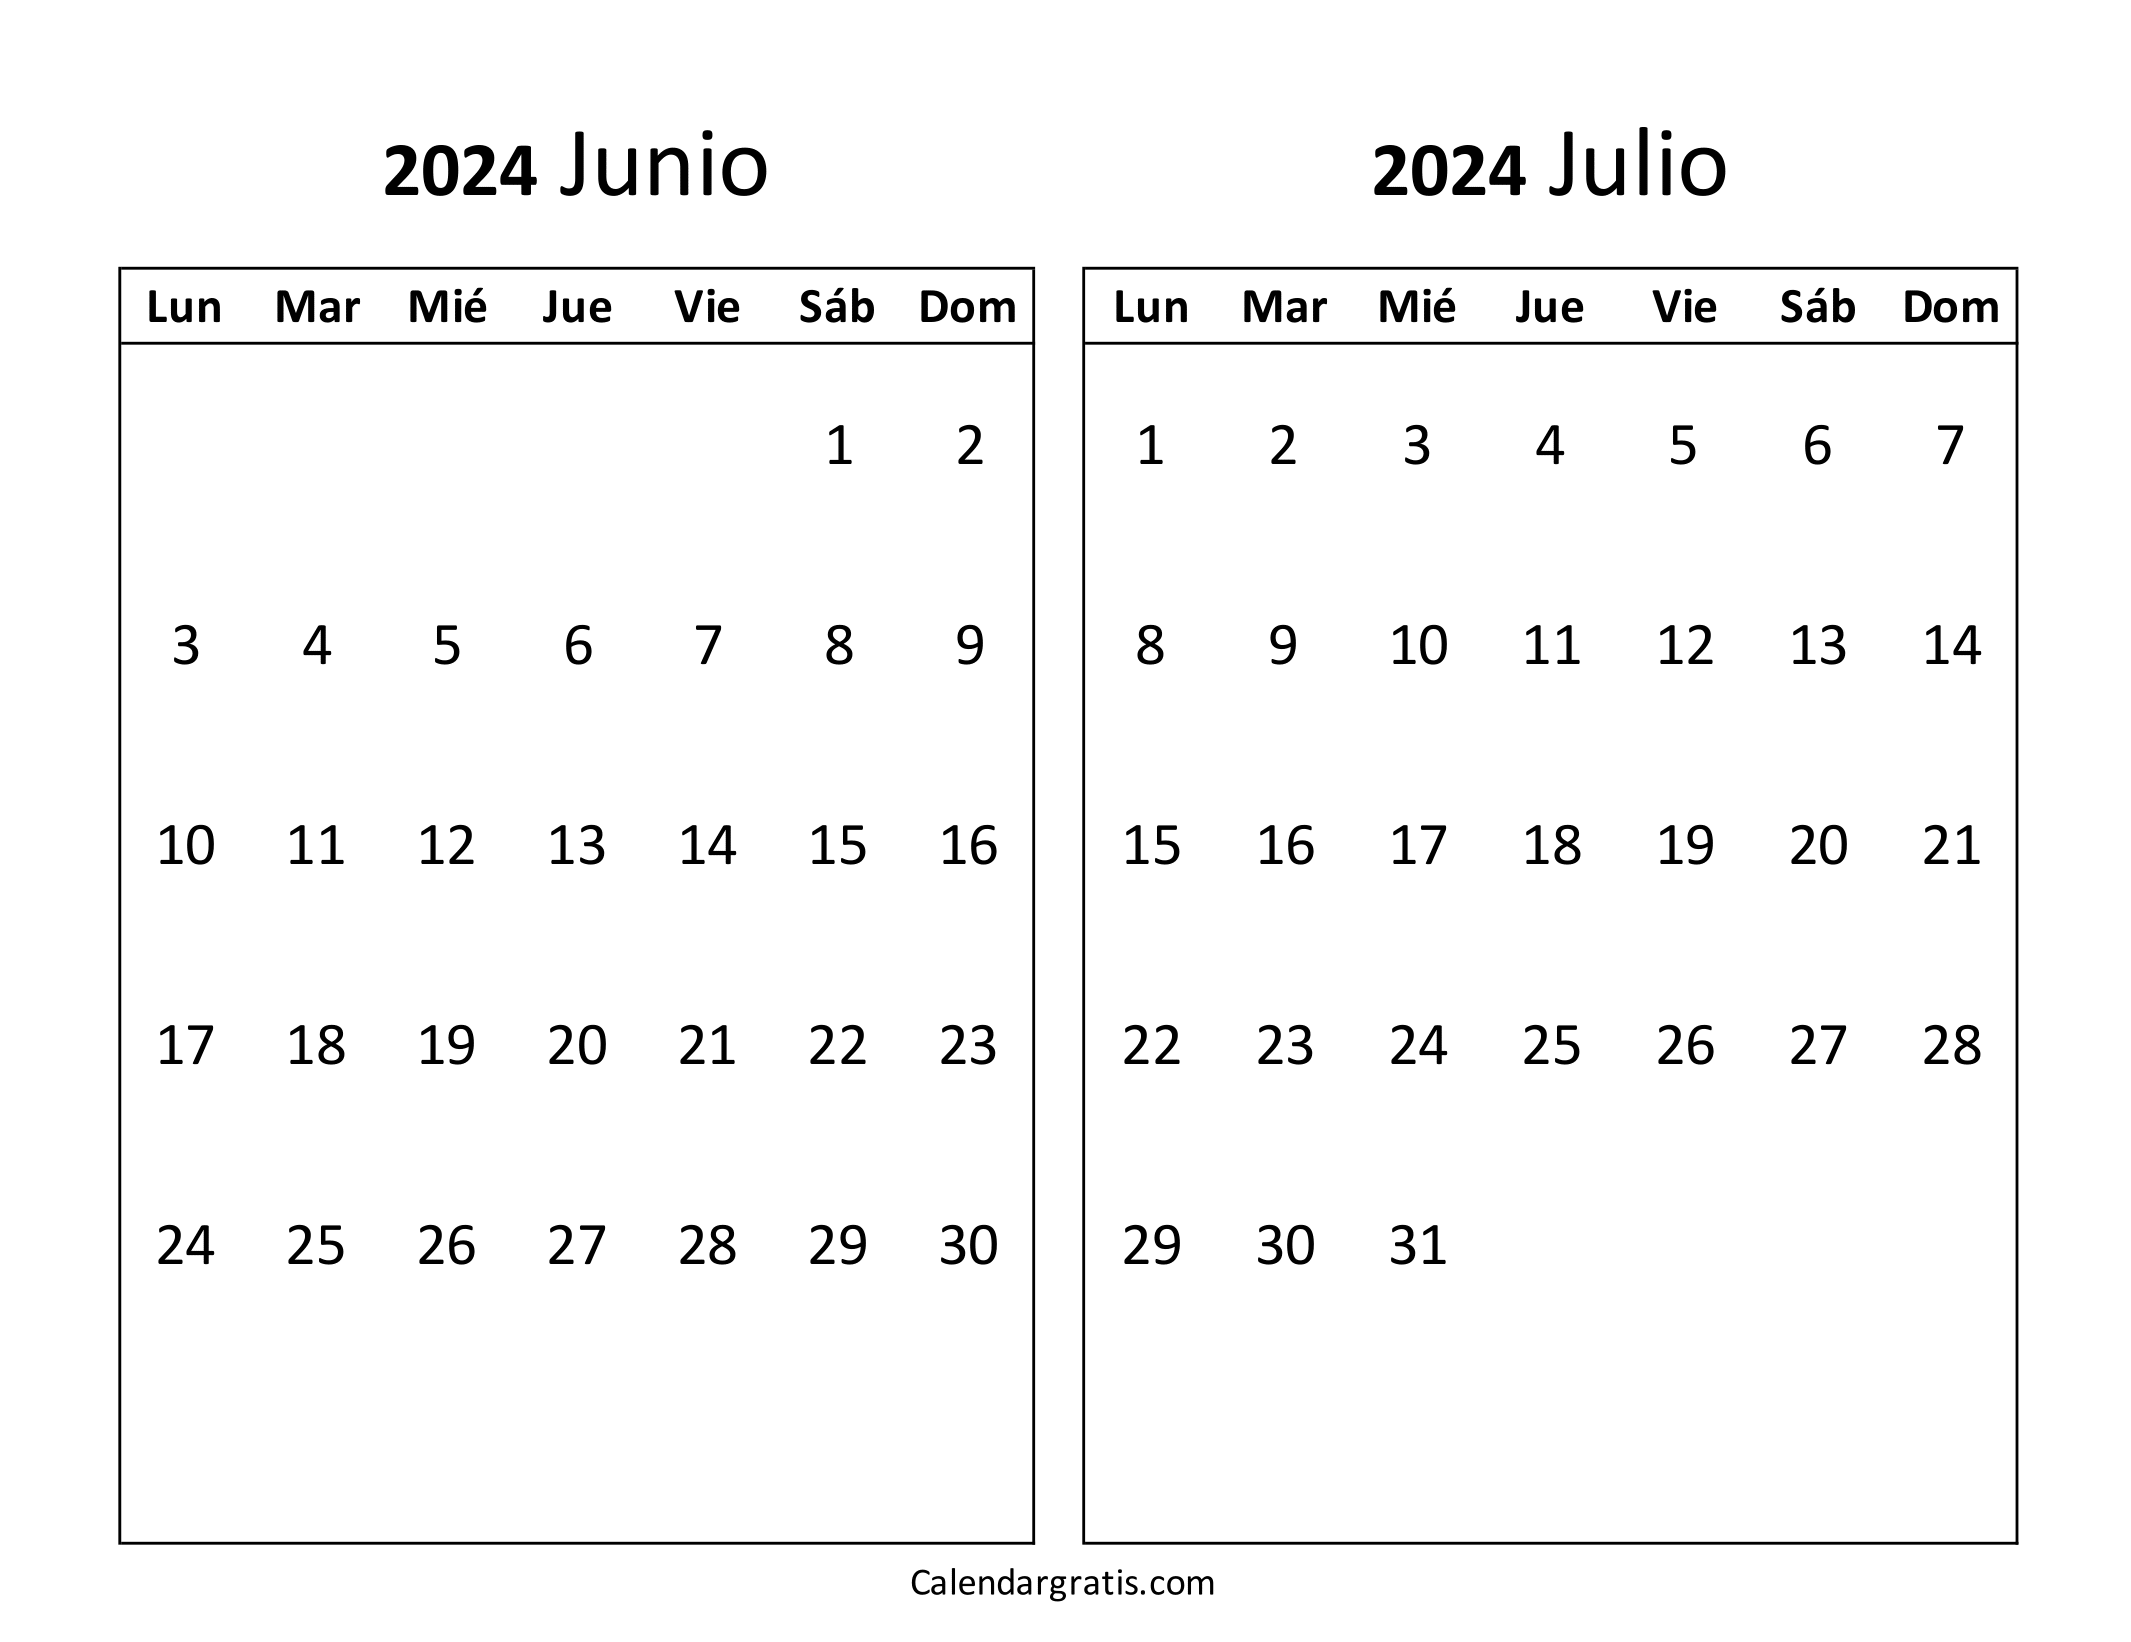 Calendario junio julio 2024 para imprimir gratis